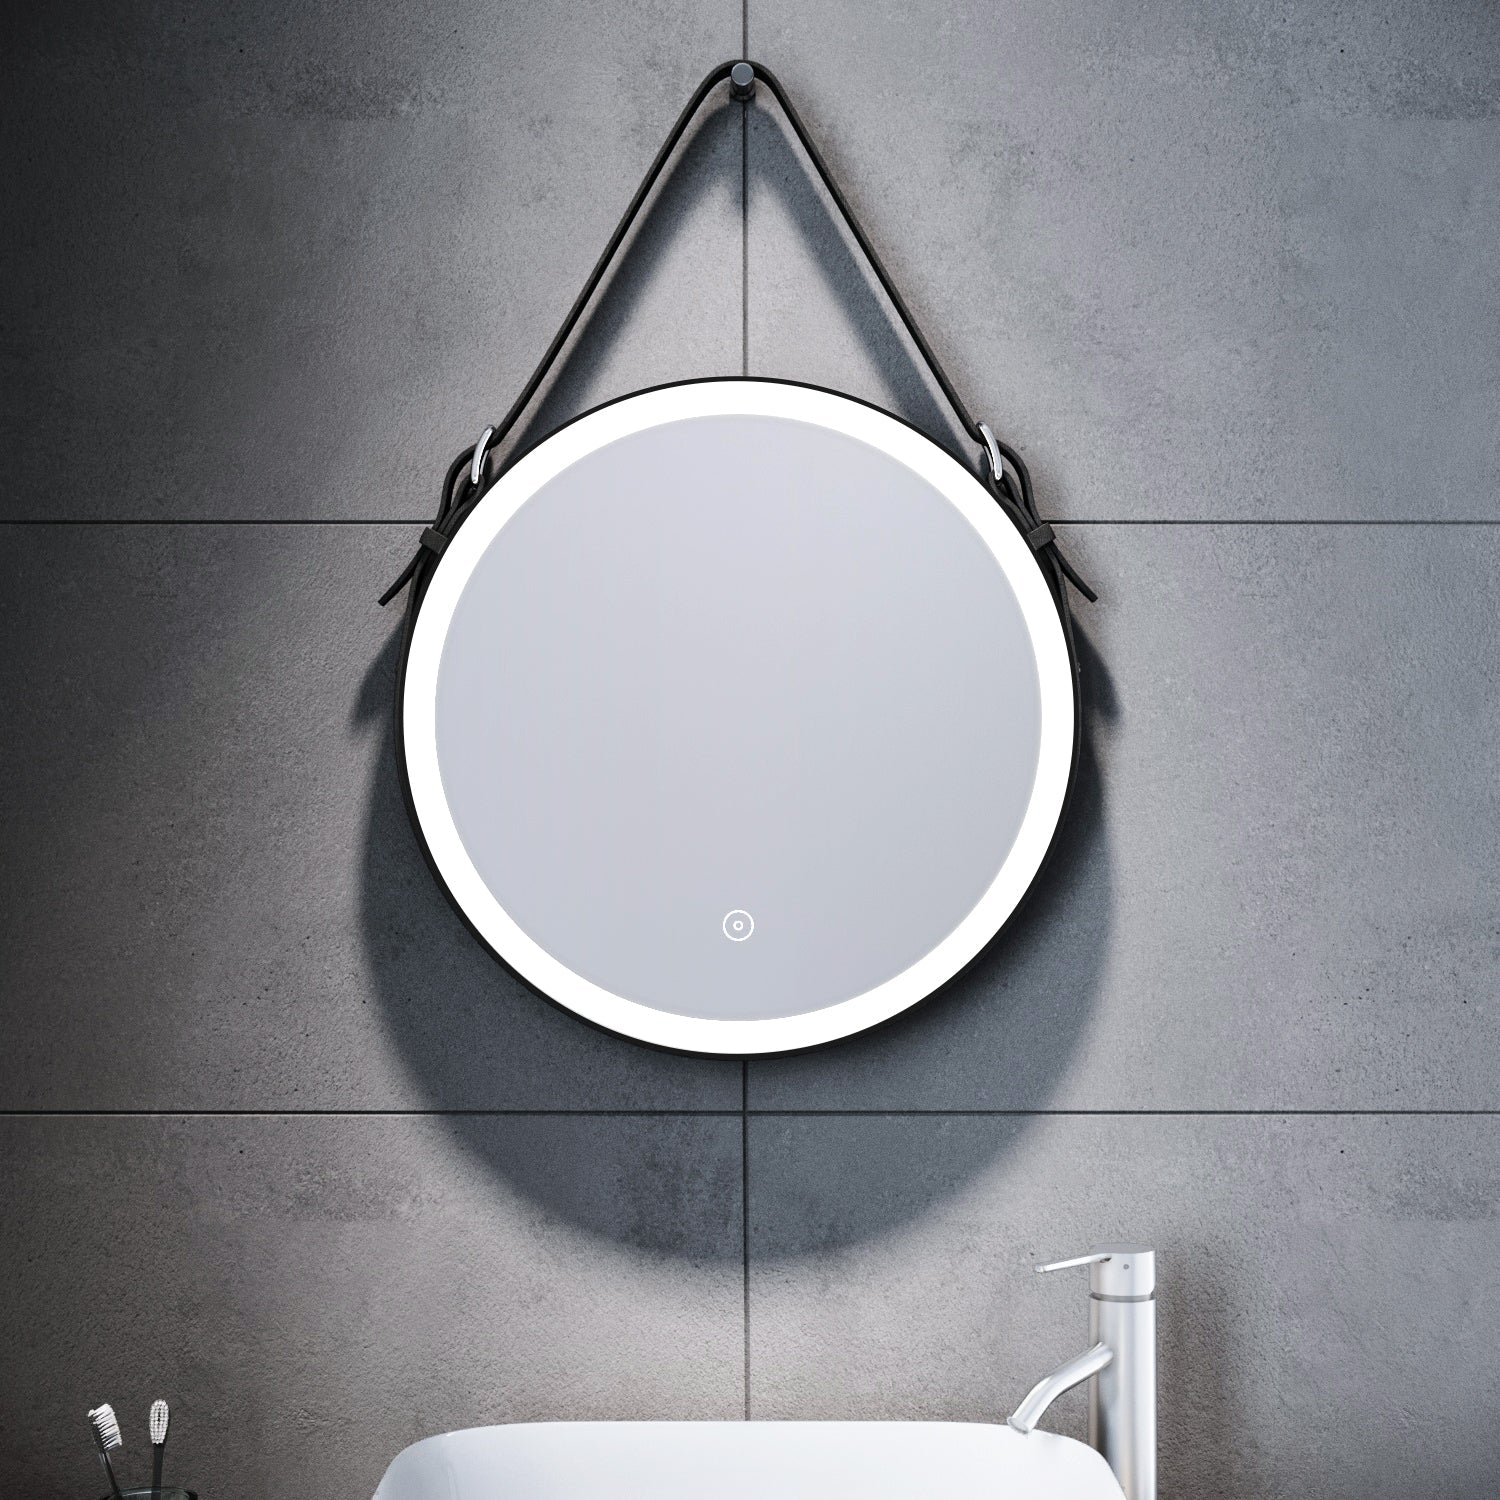 SONNI Badspiegel Rund Beschlagfrei Badspiegel mit Beleuchtung Rund 60/80cm und Touch LED Rundspiegel mit Verstellbarer Ledergürtel